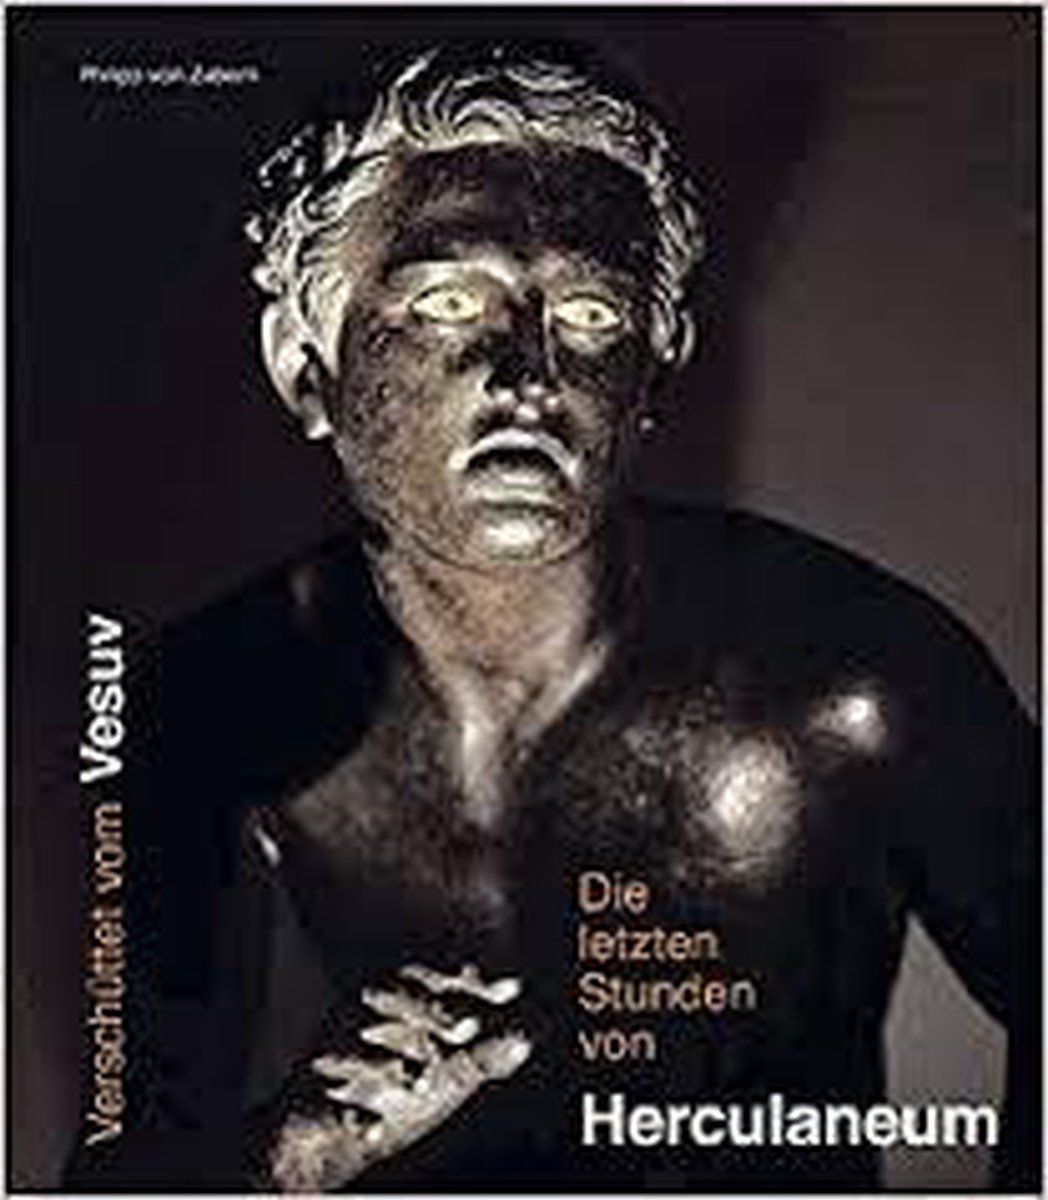 Die letzten Stunden von Herculaneum